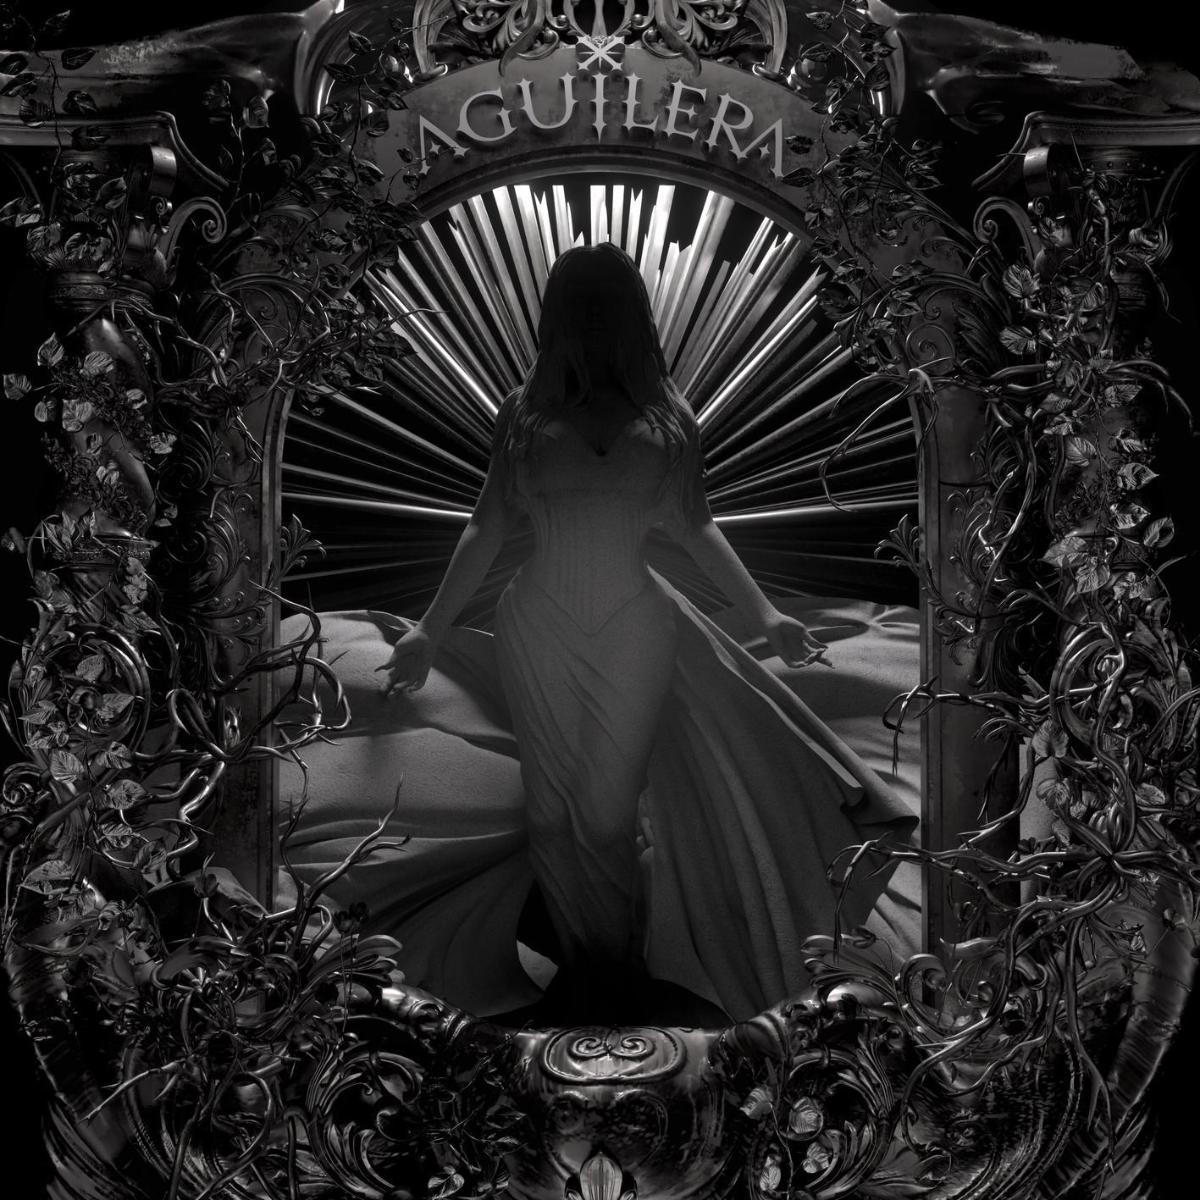 Das Albumcover "Aguilera" von Christina Aguilera zeigt die Sängerin als Statue, die in einem Torbogen steht. Um den Bogen ranken sich Äste und Blumen. Das Cover ist in schwarz-weiß gehalten.